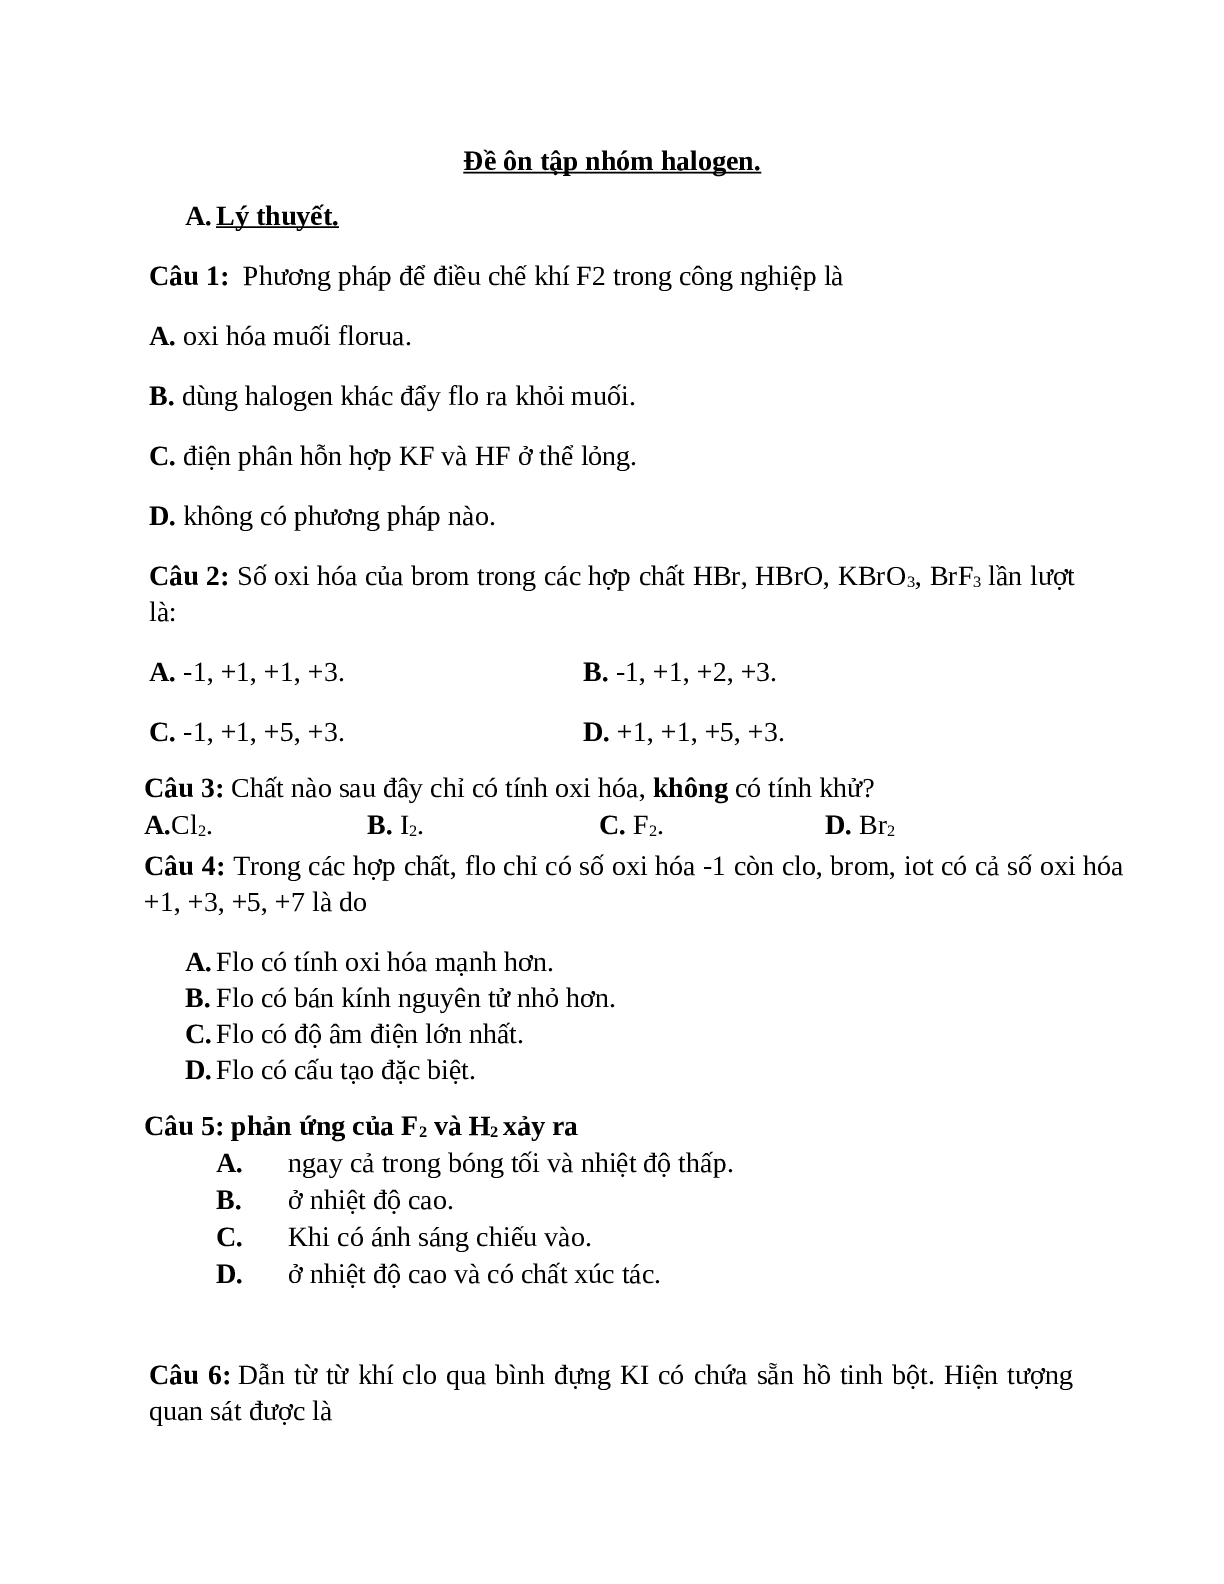 20 câu trắc nghiệm chuyên đề nhóm halogen ( đề 1) (trang 1)